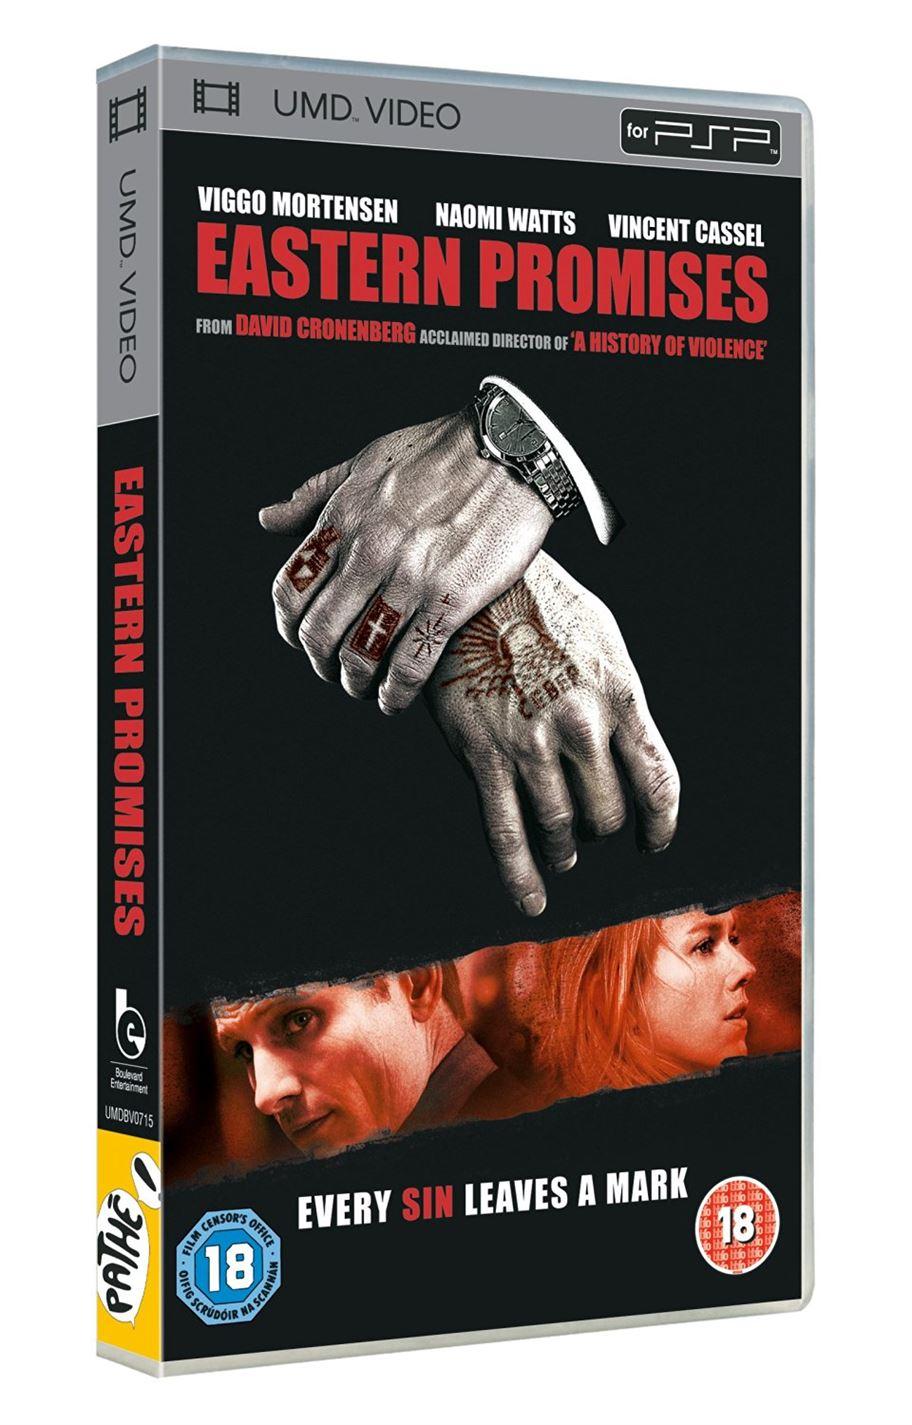  Eastern Promises - UMD Mini for PSP - 2007 - UK SELLER